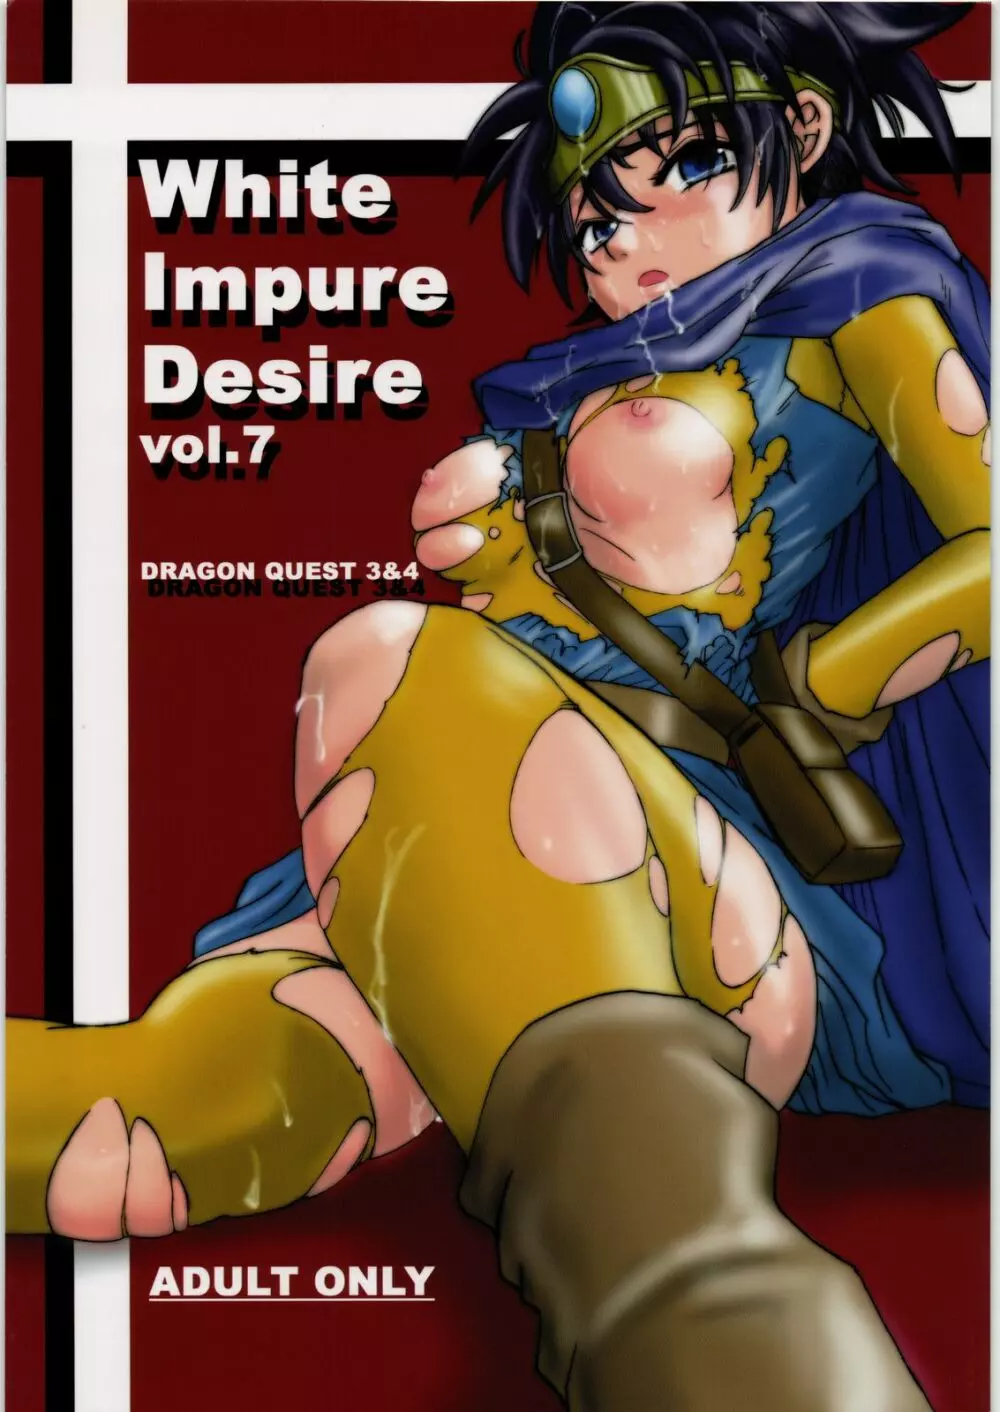 White Impure Desire vol.7